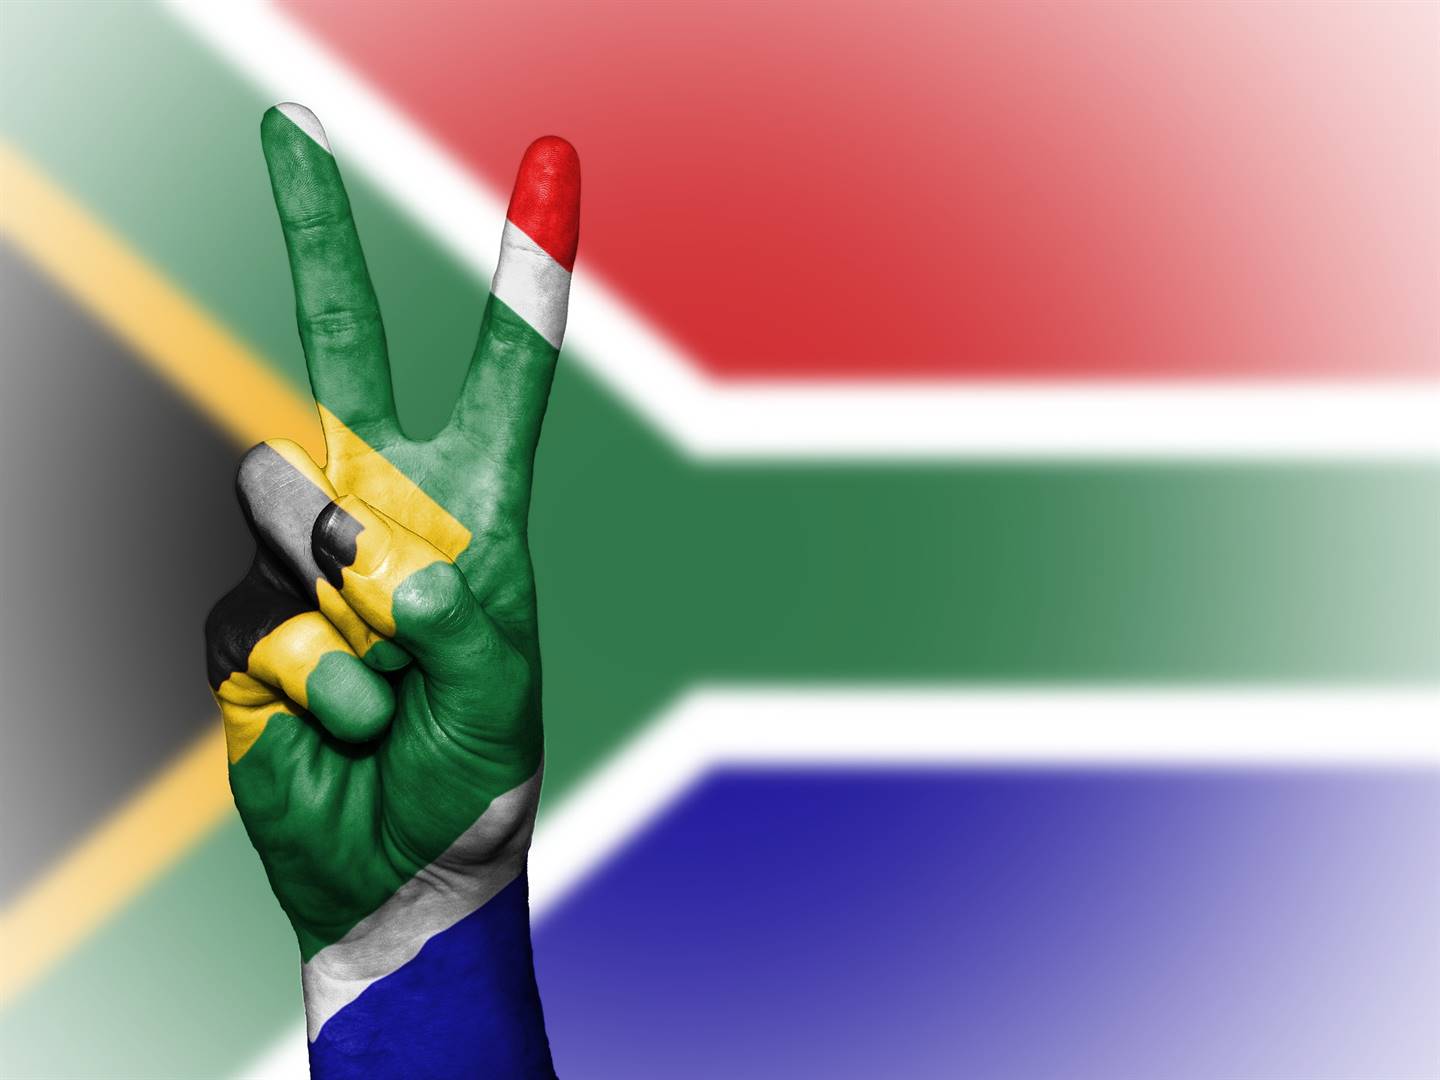 Die toerismebedryf sê dit is belangrik dat Suid-Afrika se inentingsprogram op dreef bly en die uitreiking van digitale inentingsertifikate so gou as moontlik vlot begin verloop. Foto: Pixabay